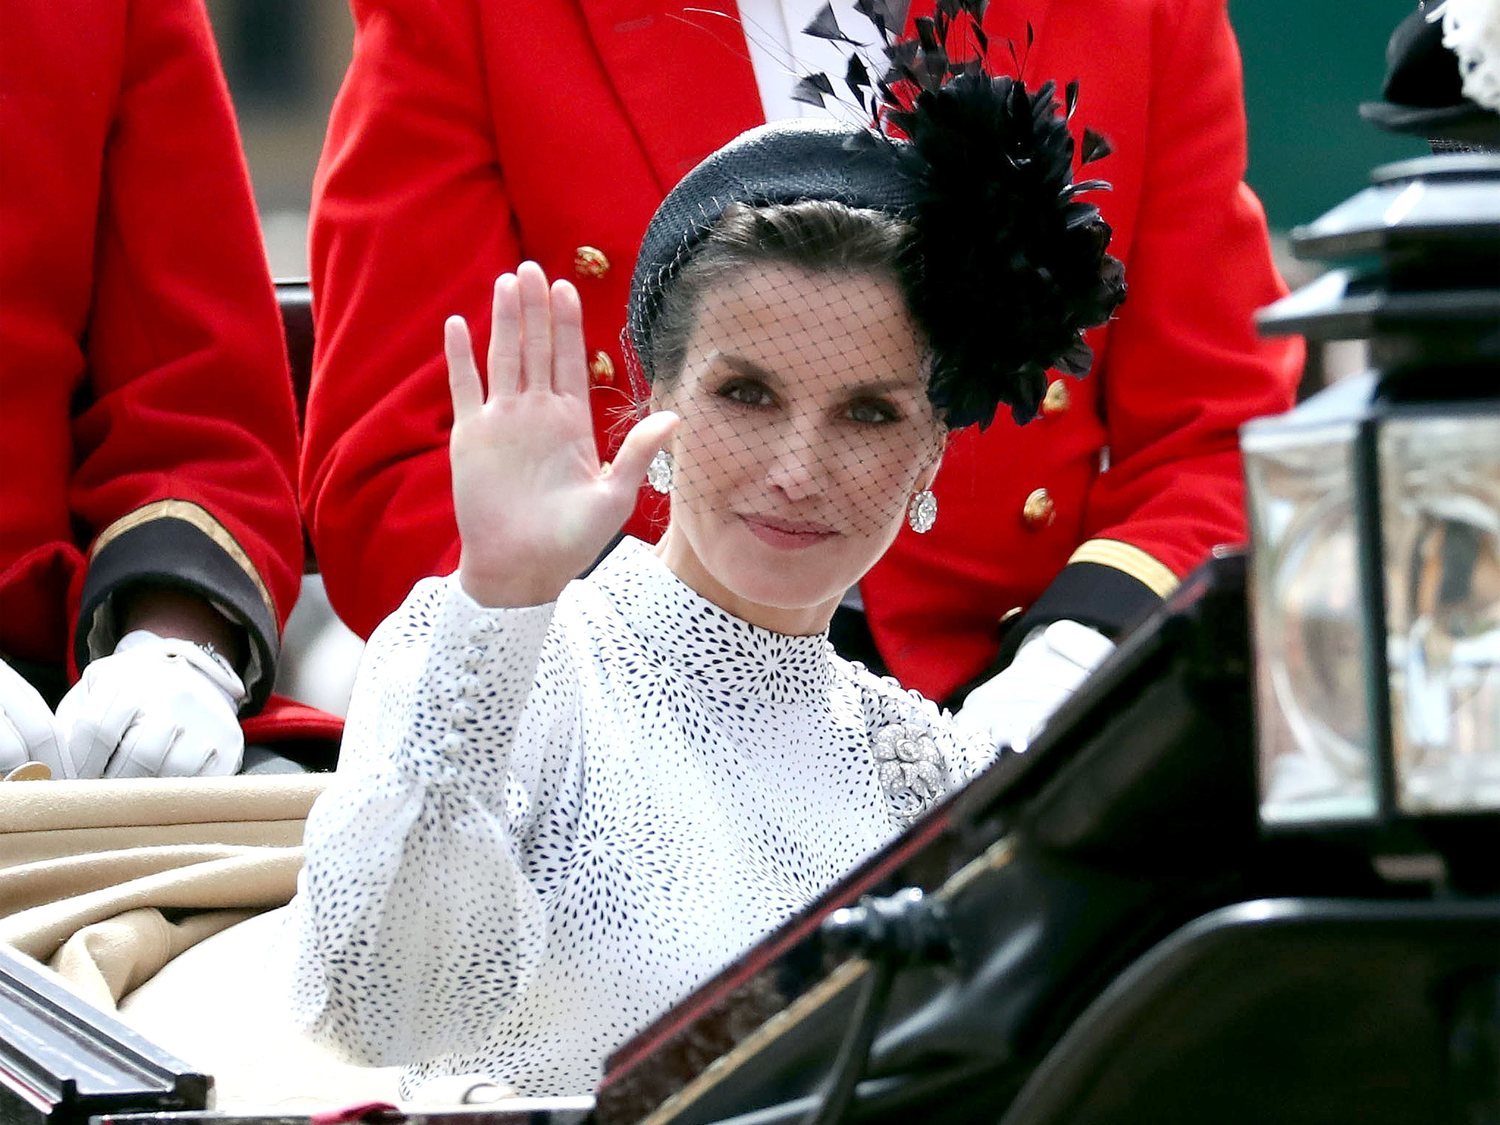 El precio y dónde puedes encontrar el vestido que la reina Letizia ha lucido en Londres